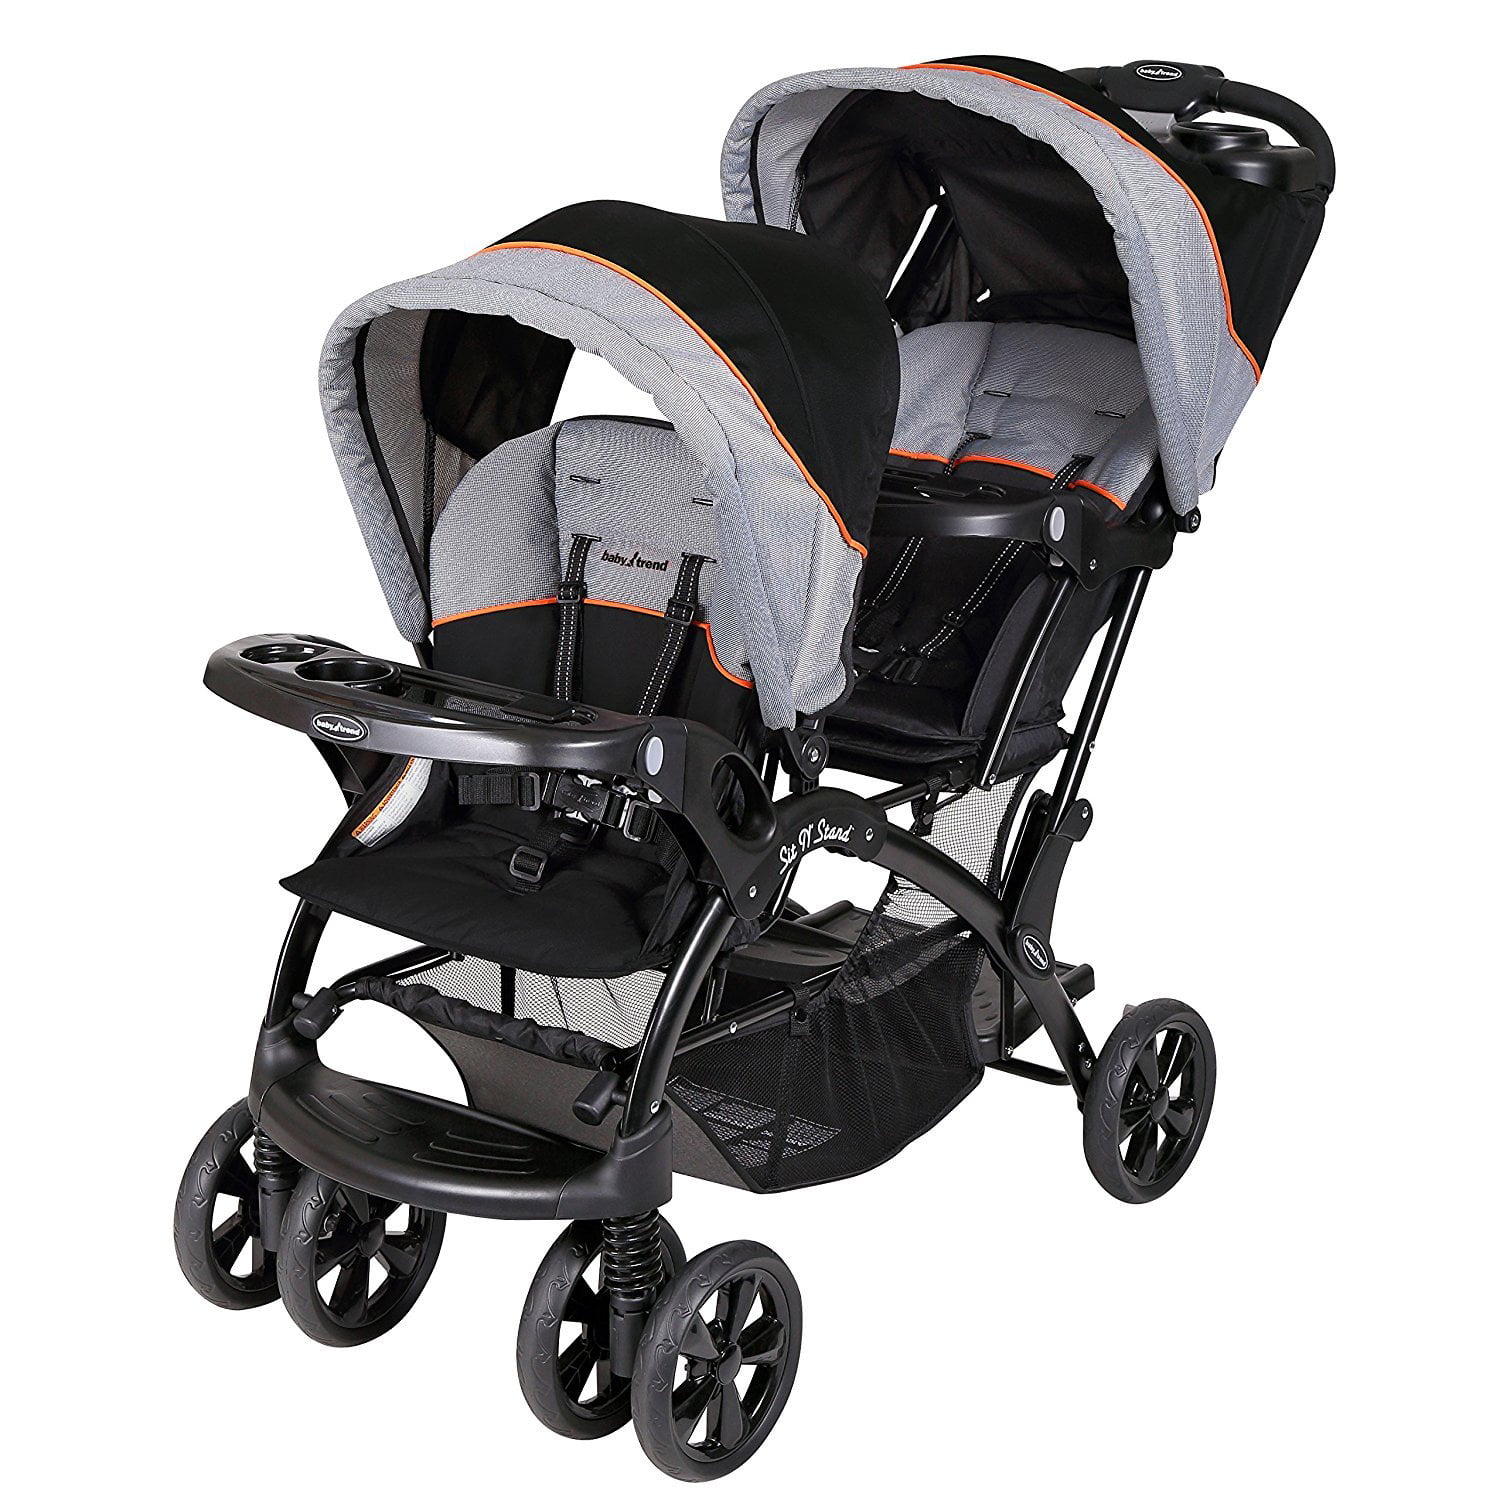 Baby Trend Sit N Stand Double Stroller, Millennium Orange - Walmart.com